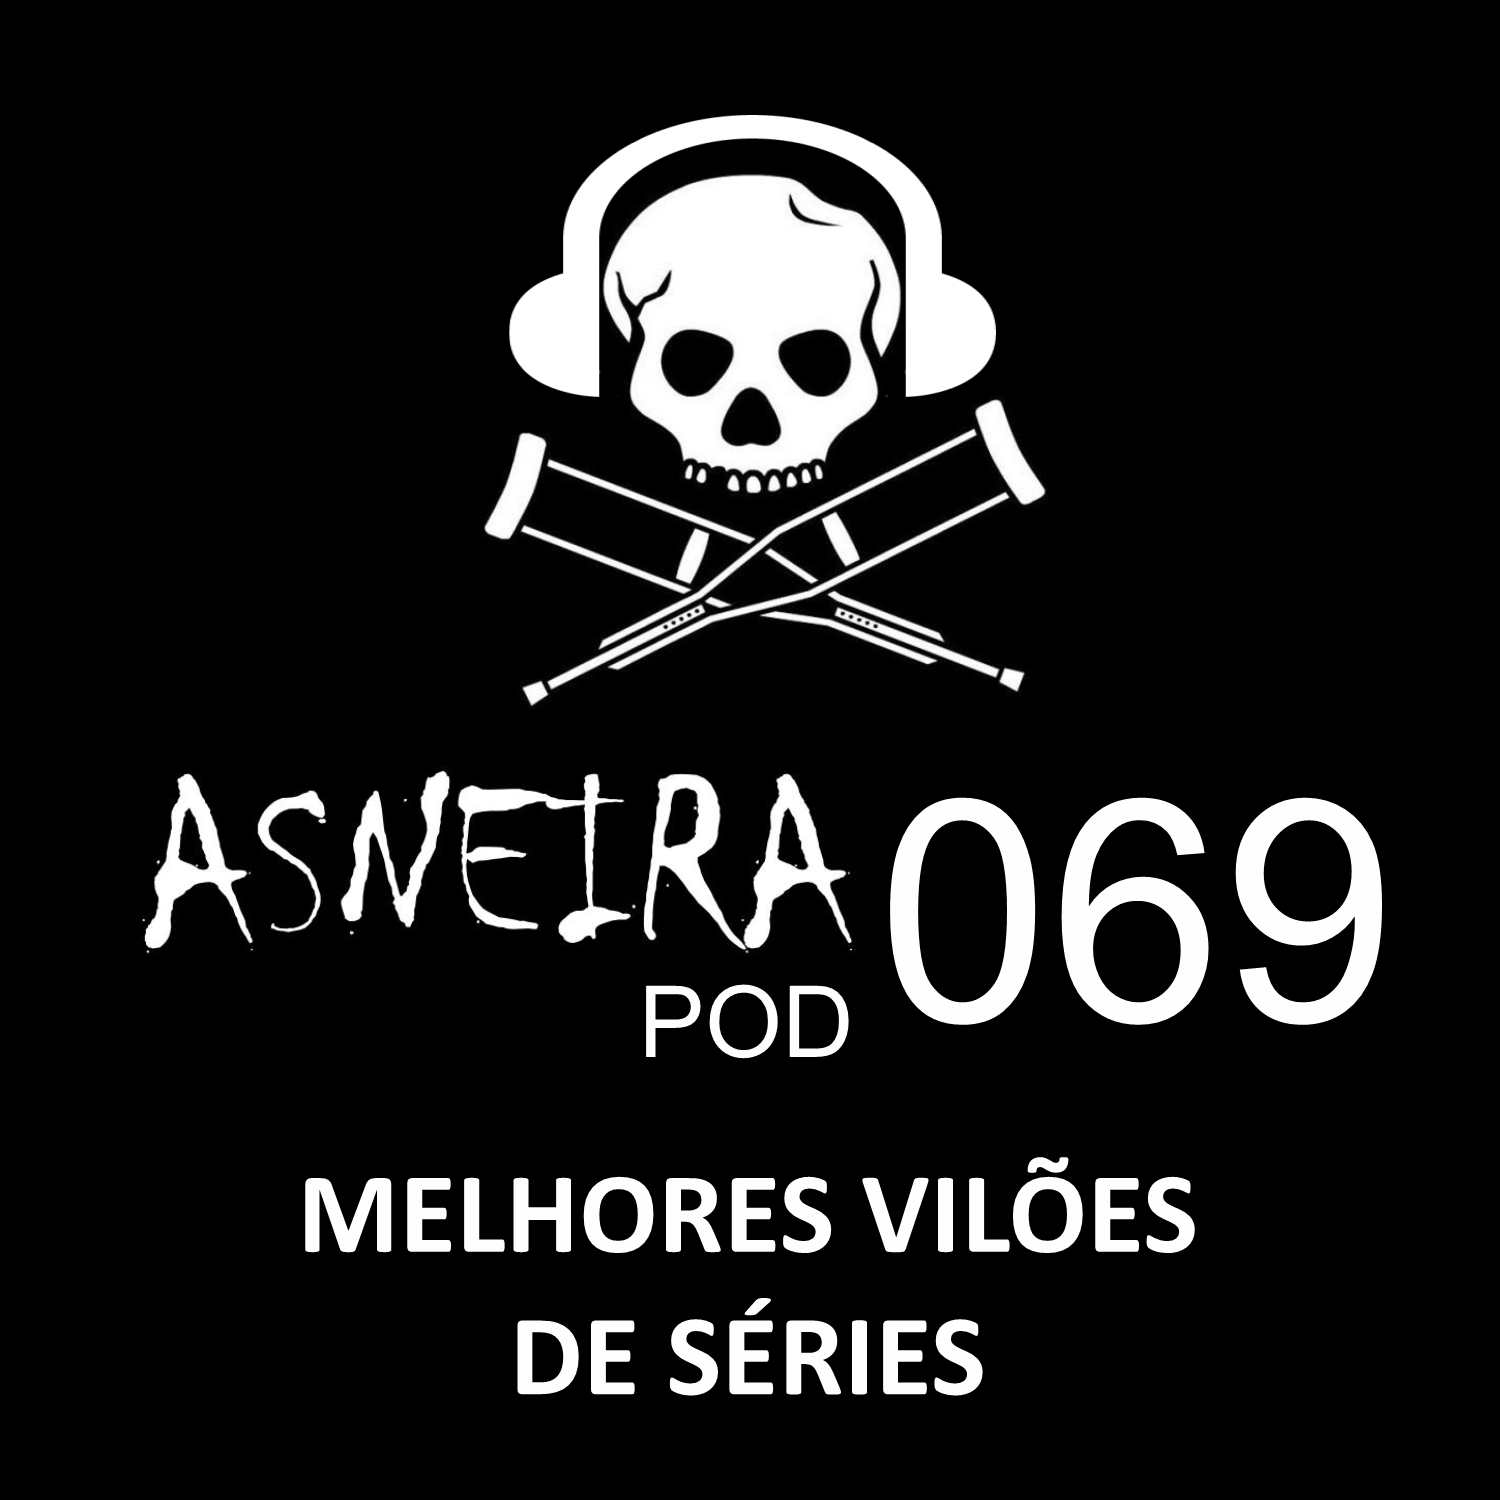 AsneiraPOD 069 – Melhores vilões de séries